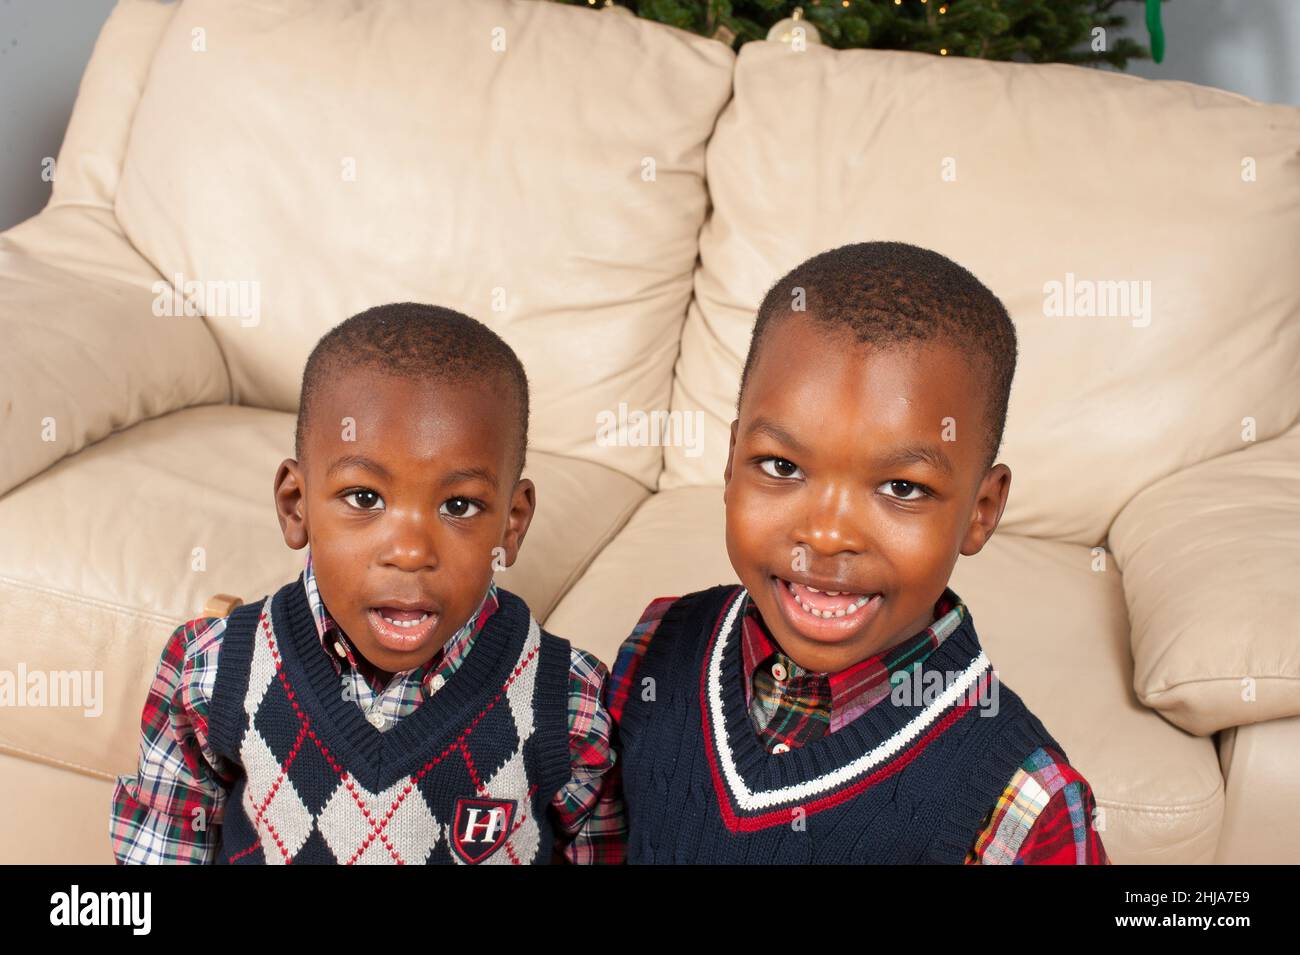 Retrato de dos hermanos en casa, de 2 y 4 años, mirando la cámara, usando jerséis Foto de stock